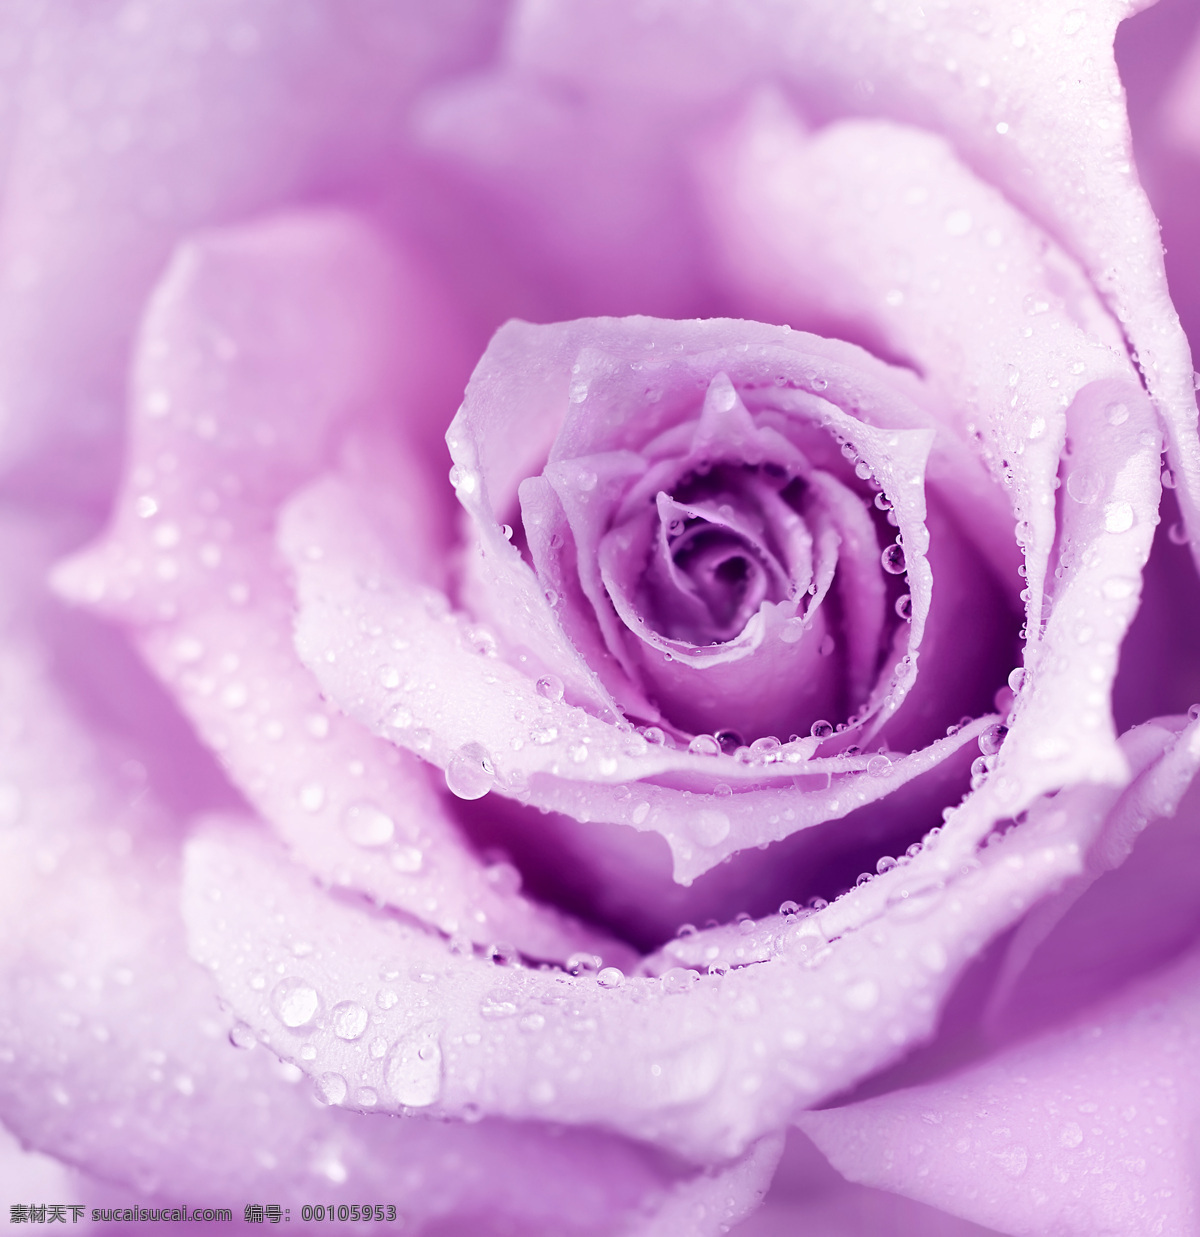 紫色 玫瑰 上 露珠 花瓣 水珠 露水 美丽鲜花 漂亮花朵 花卉 玫瑰花 紫色花朵 花草树木 生物世界 粉色